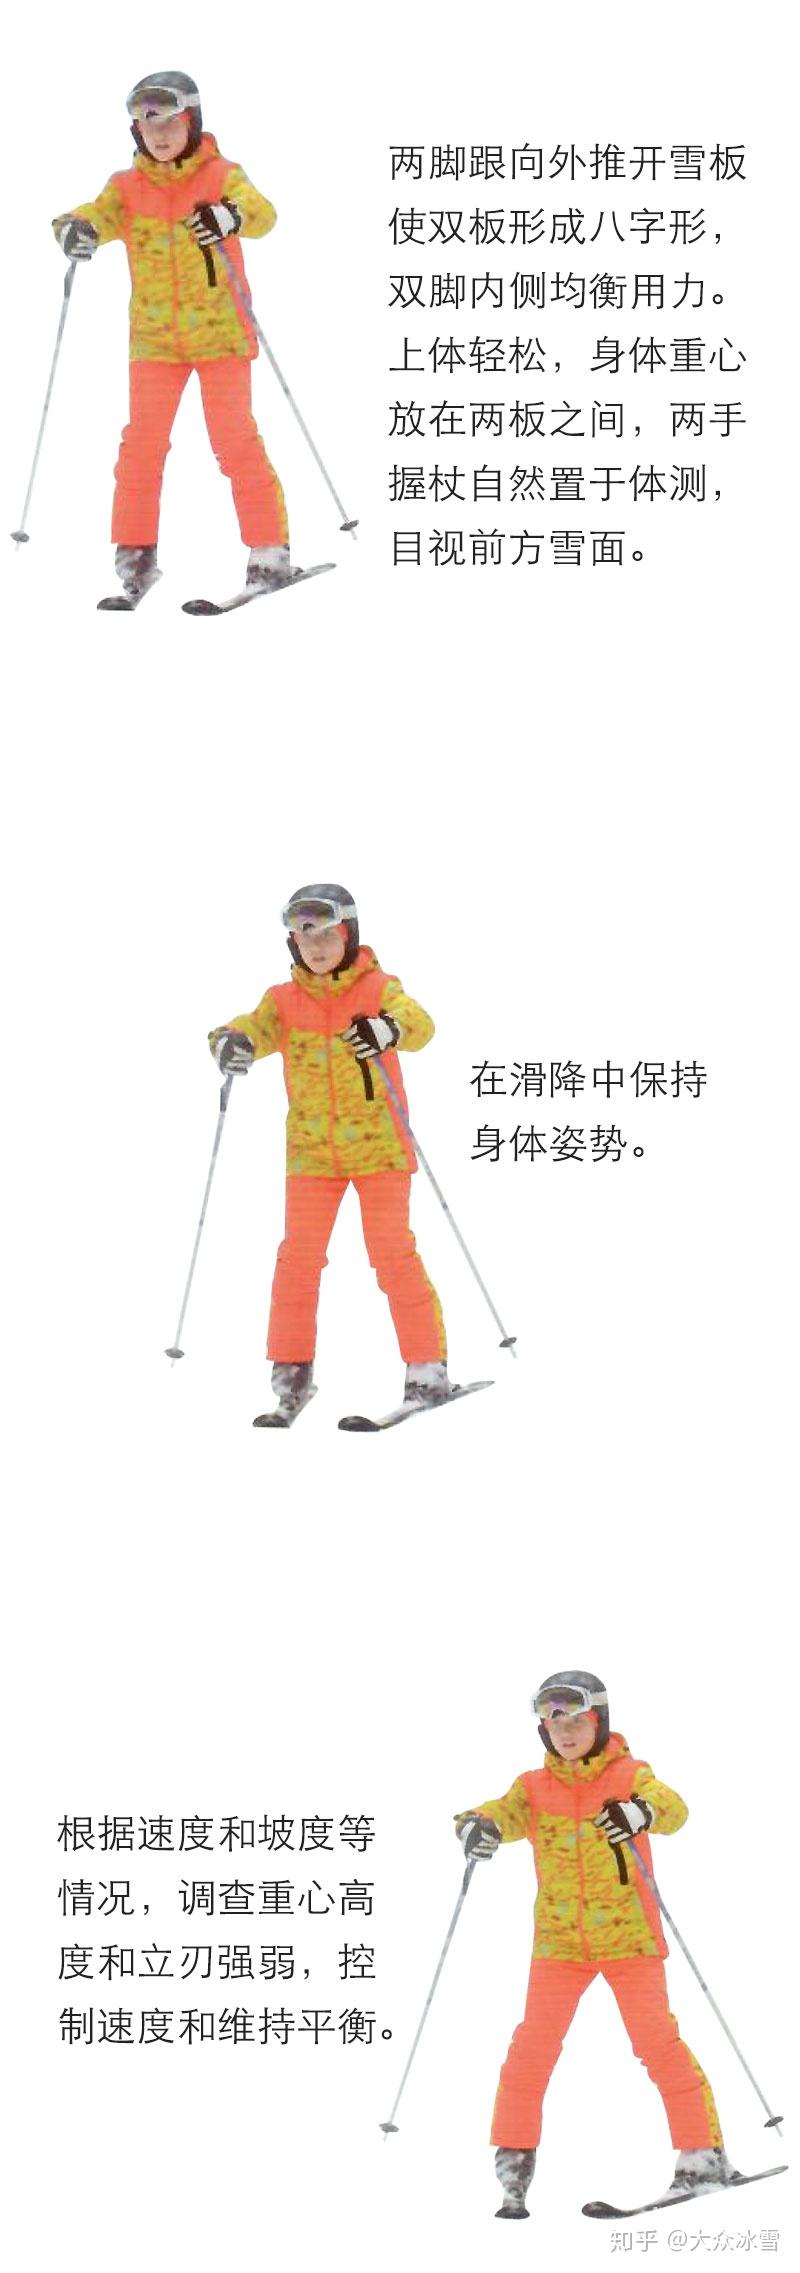 滑雪之犁式制动与滑降